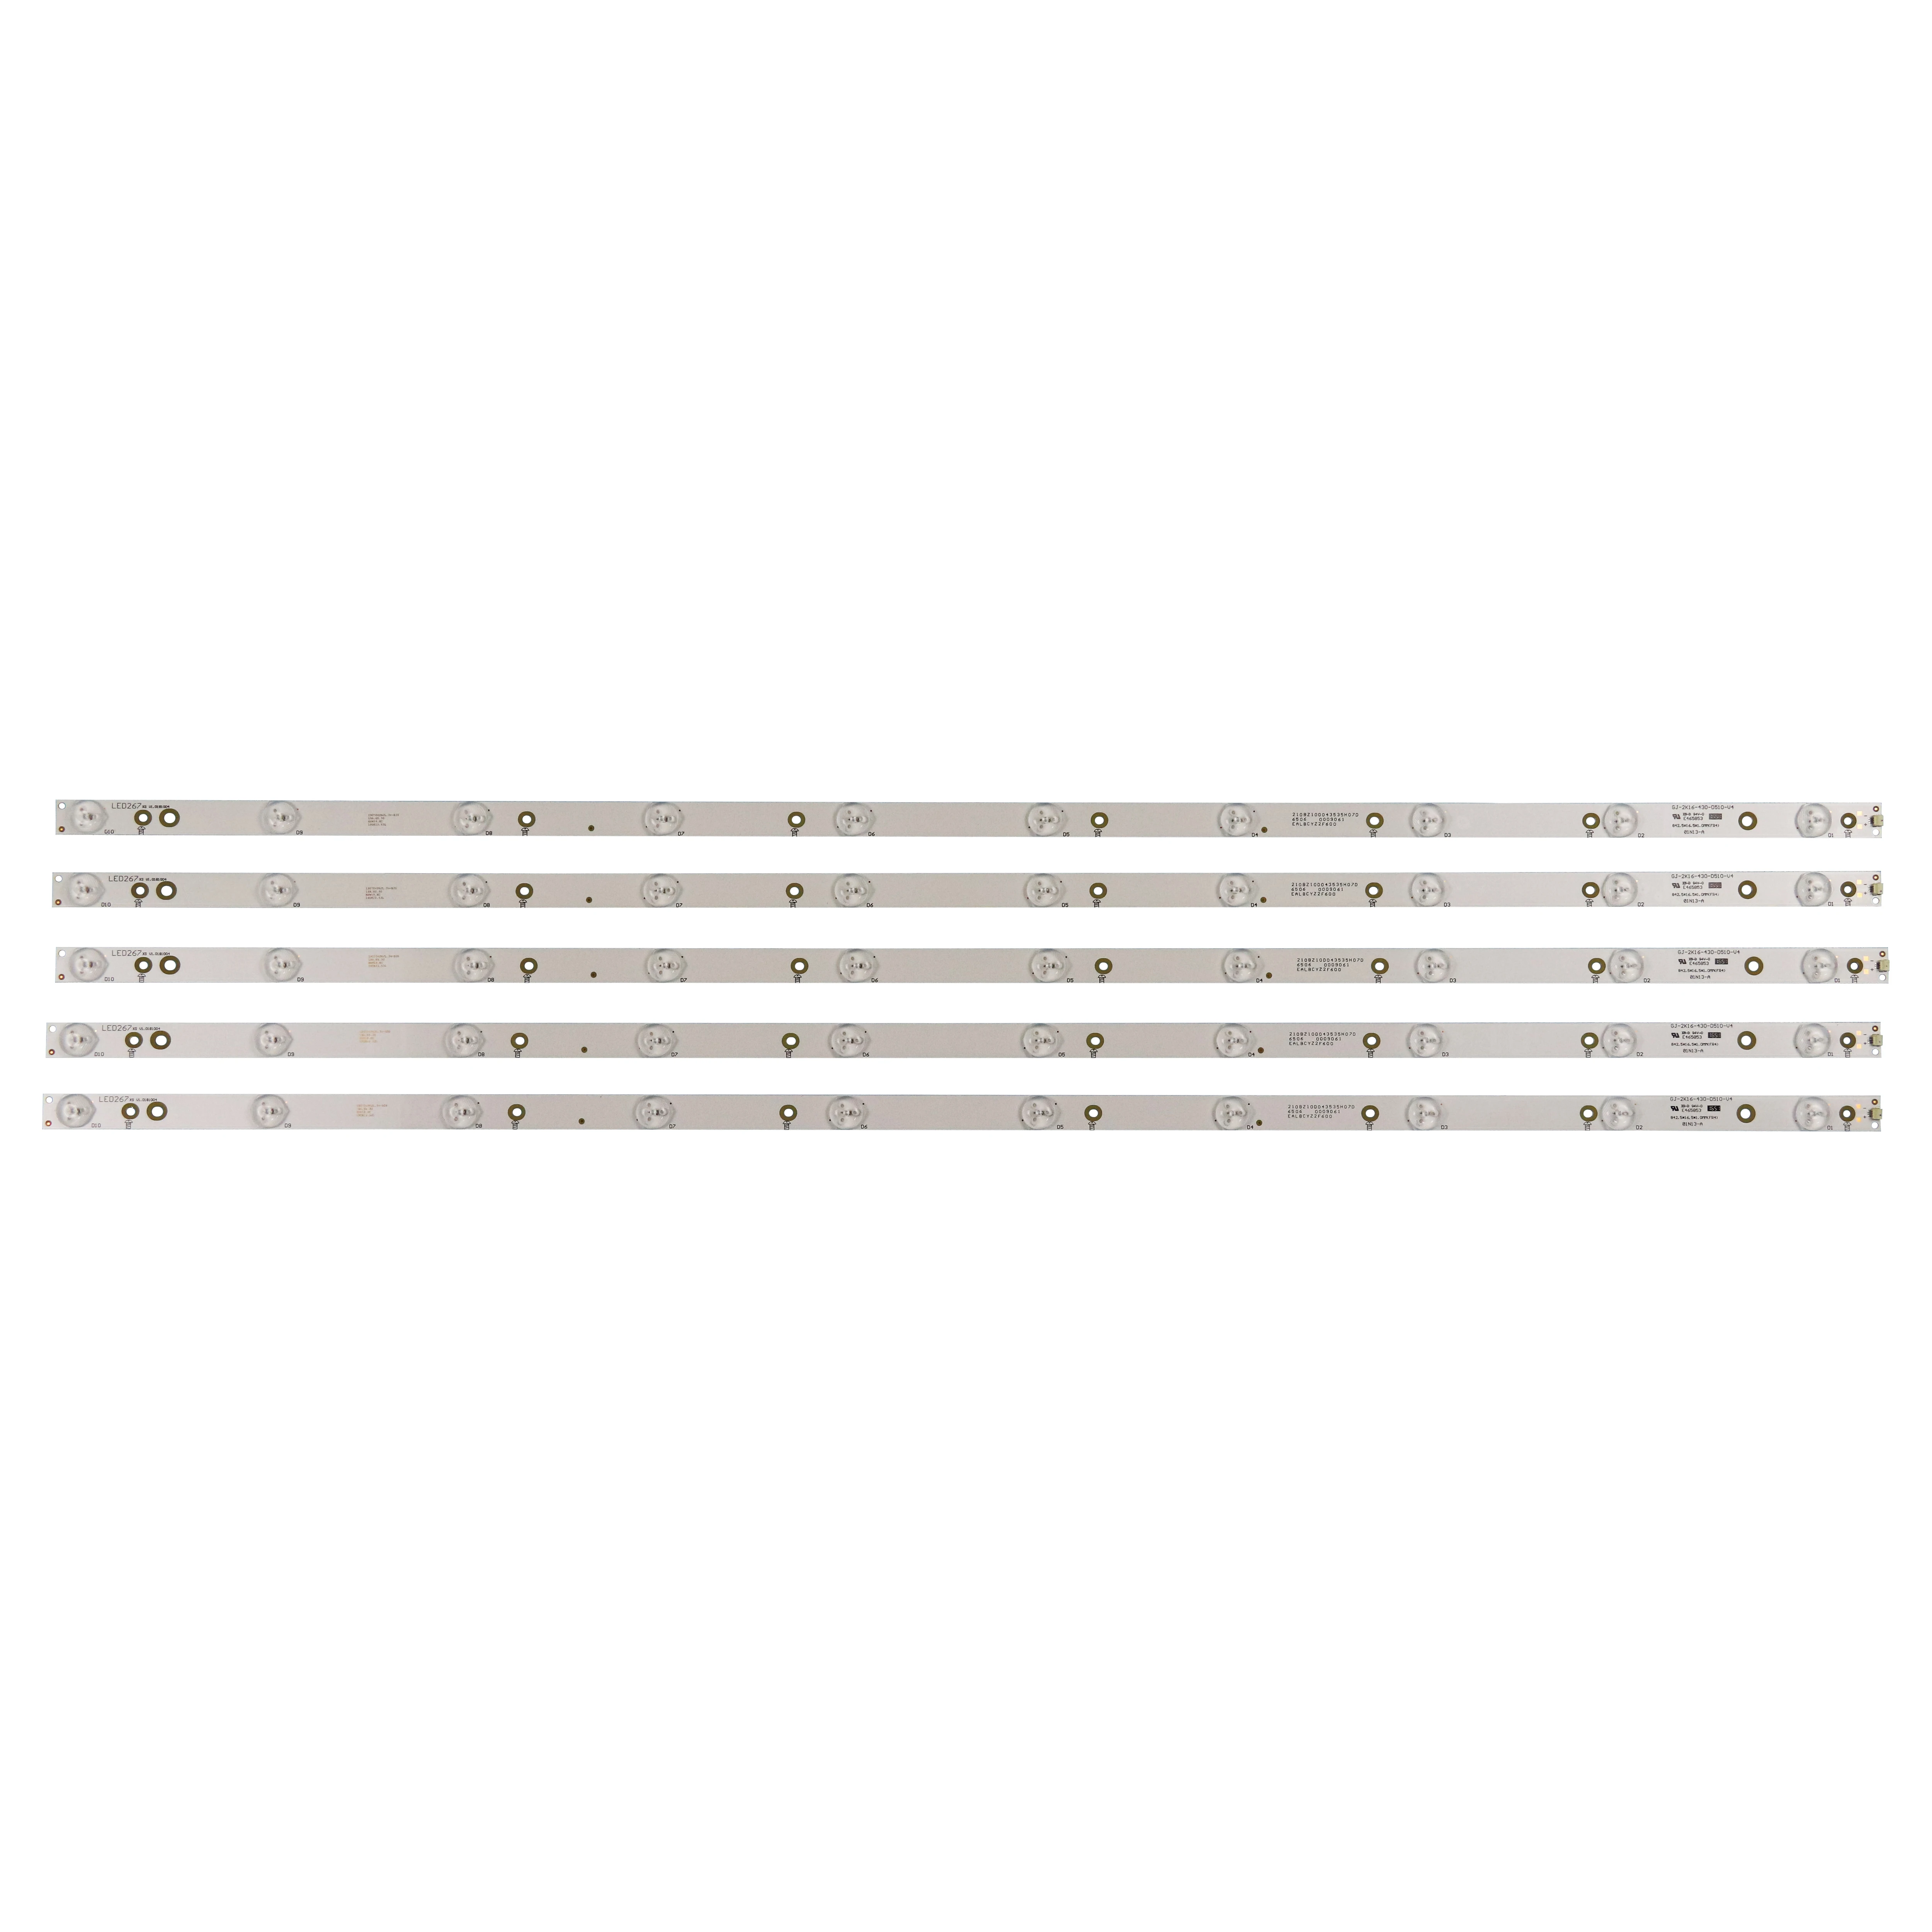 10lens LED Strip Light GJ-2K16-430-D510-V4 for Philips 43inch TV 43PFG5102 43PFT4112 43PFS4112/12 43PUT4900/1 43PFS5301/12